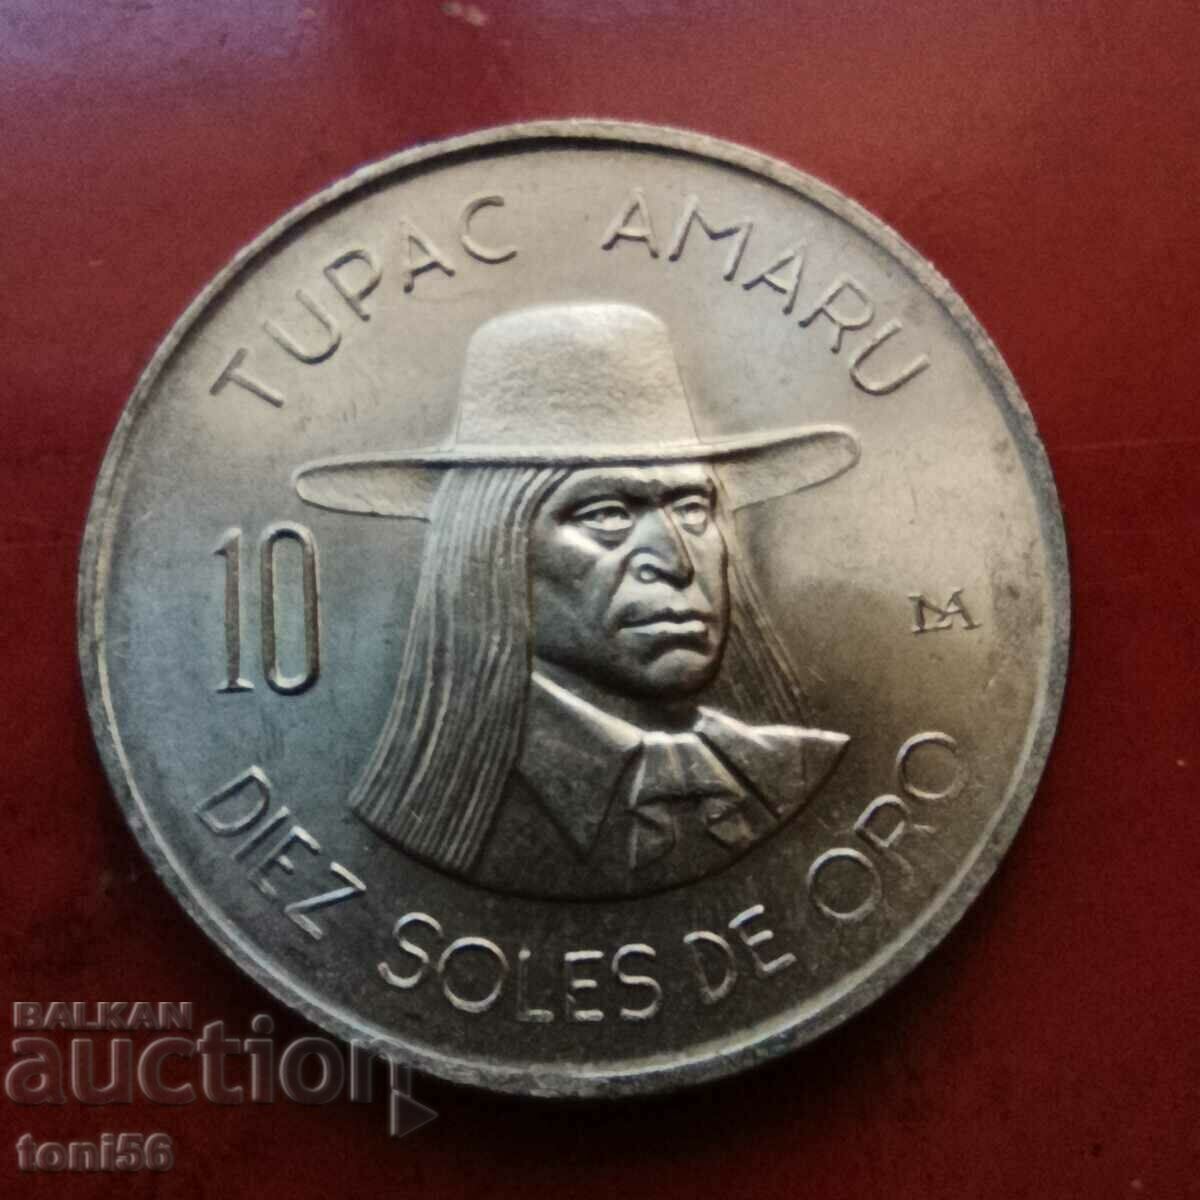 Peru 10 soles 1973 UNC - "Tupac Amaro"